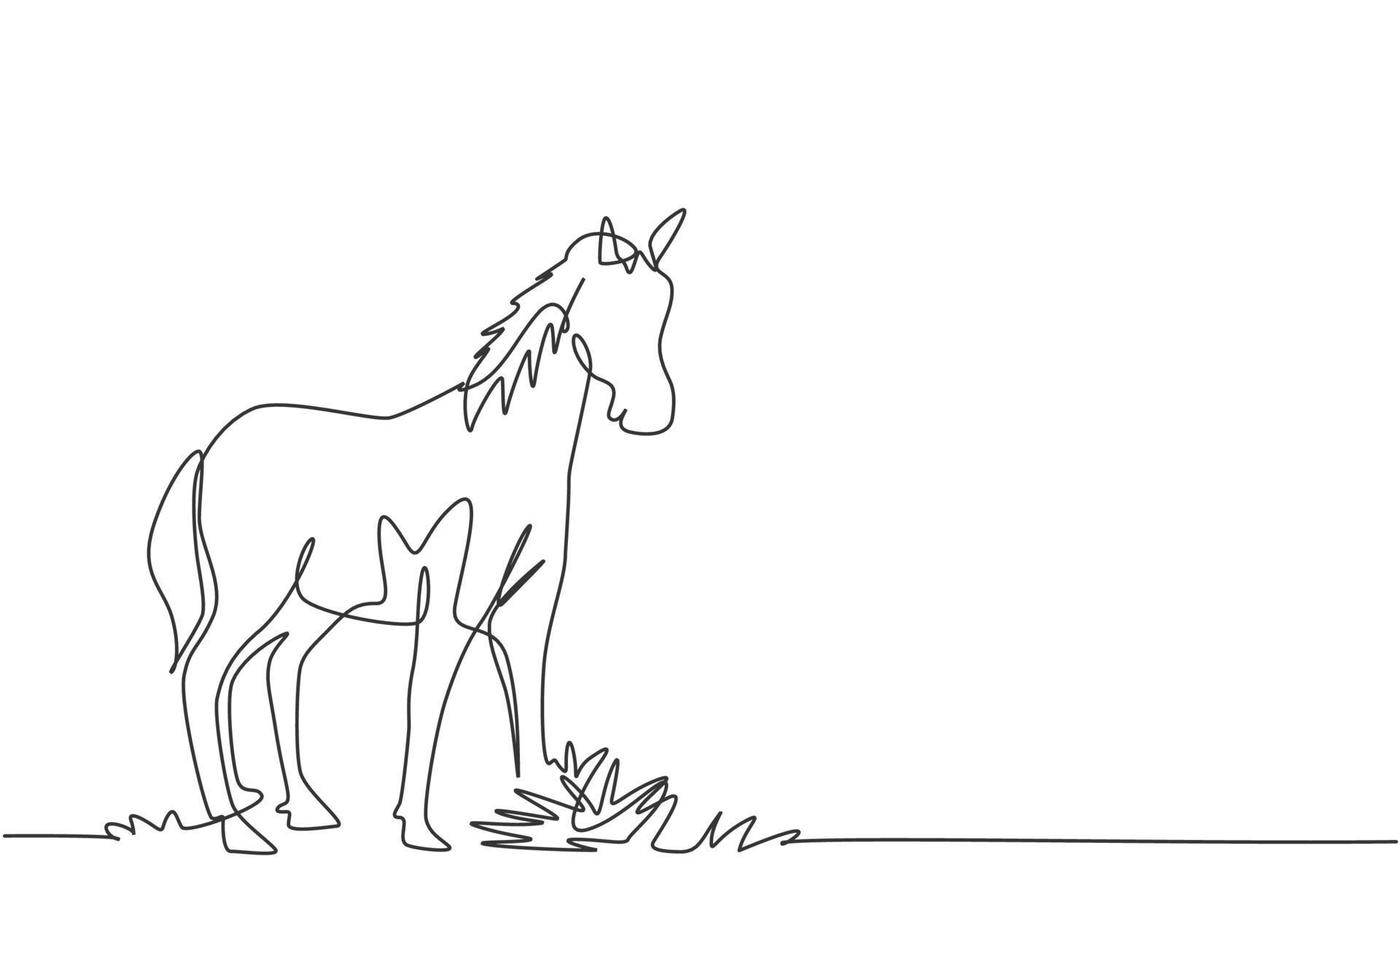 um único desenho de um cavalo em pé firmemente no pasto. negócio de pecuária bem-sucedido administrado por fazendeiros profissionais. conceito de minimalismo. ilustração em vetor gráfico de desenho de uma linha.